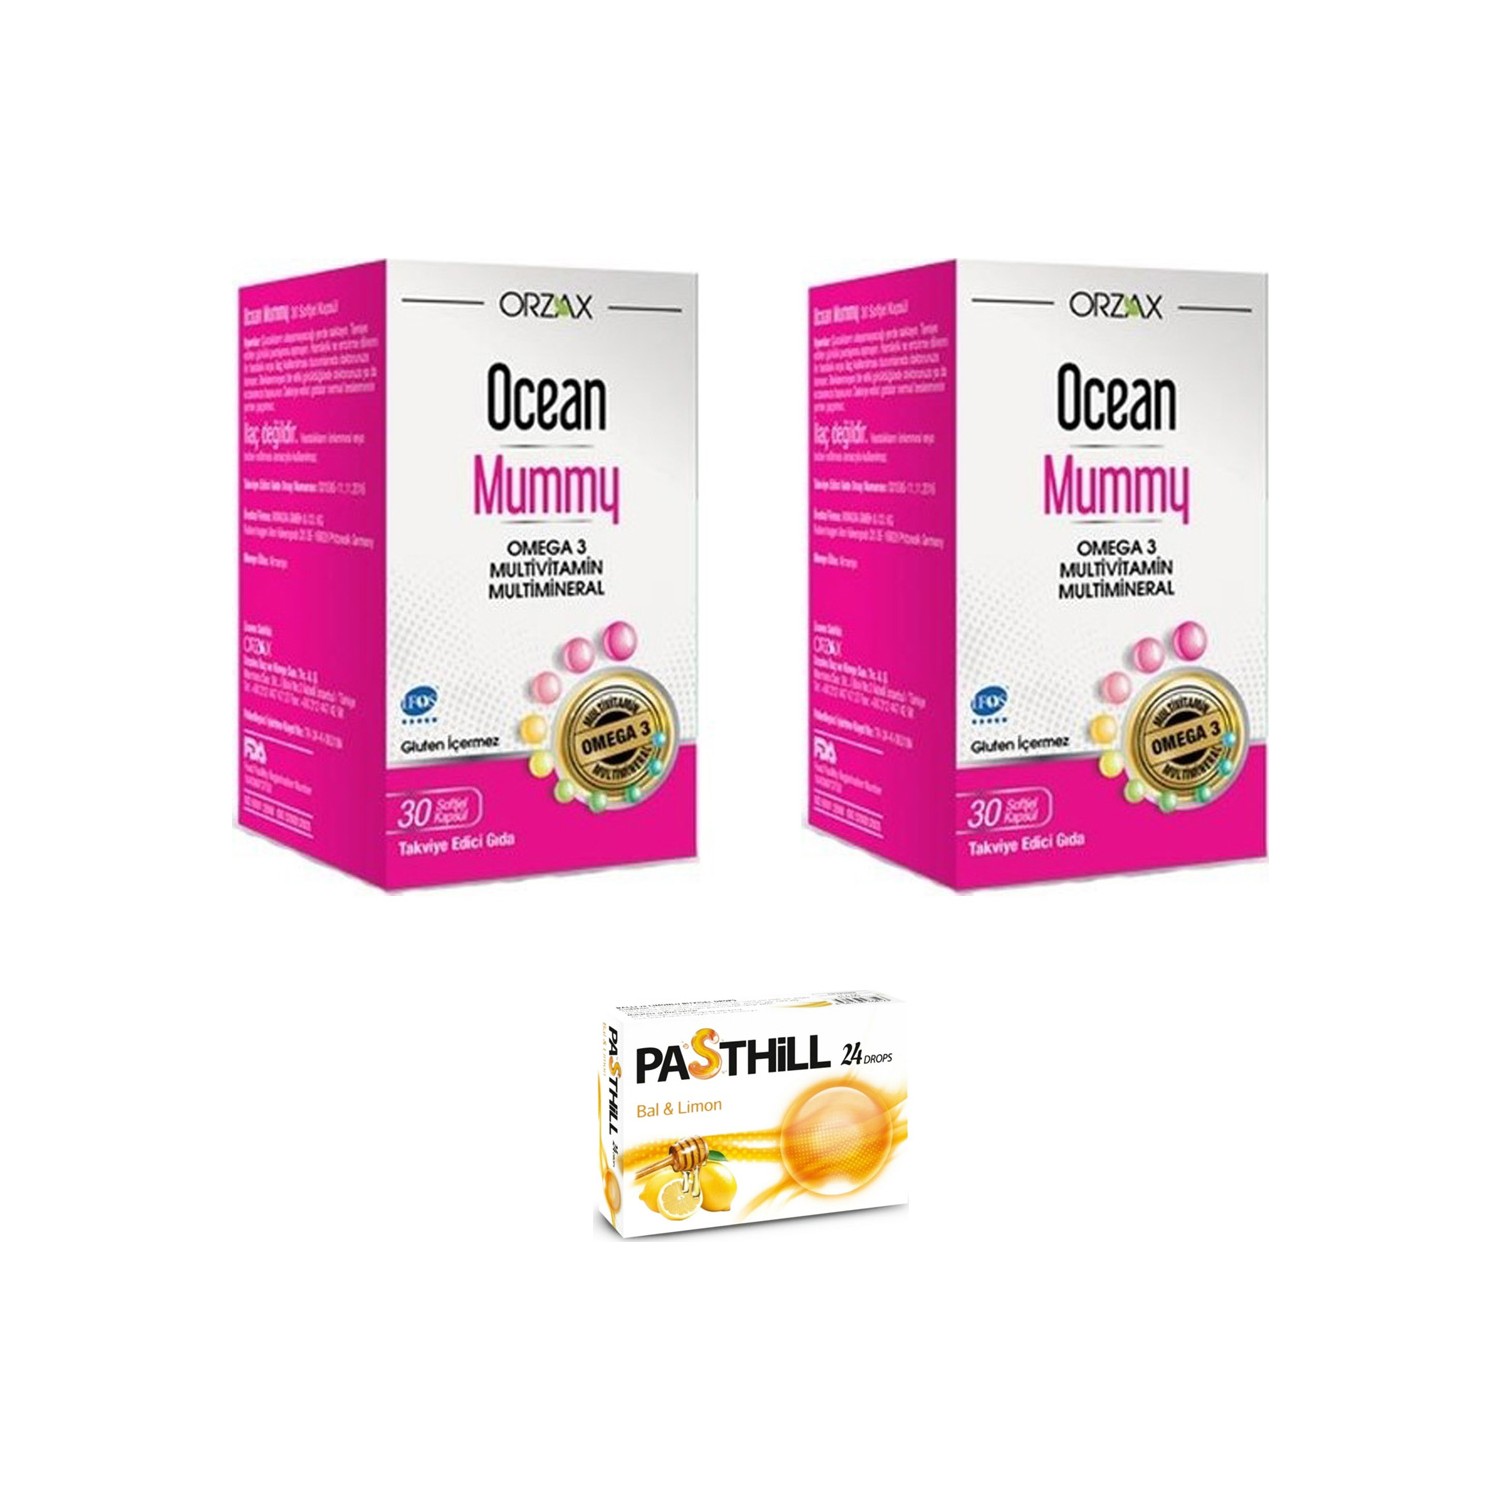 Пищевая добавка Orzax Ocean Mummy, 2 упаковки по 30 желатиновых капсул + Пастилки Pasthill со вкусом меда и лимона